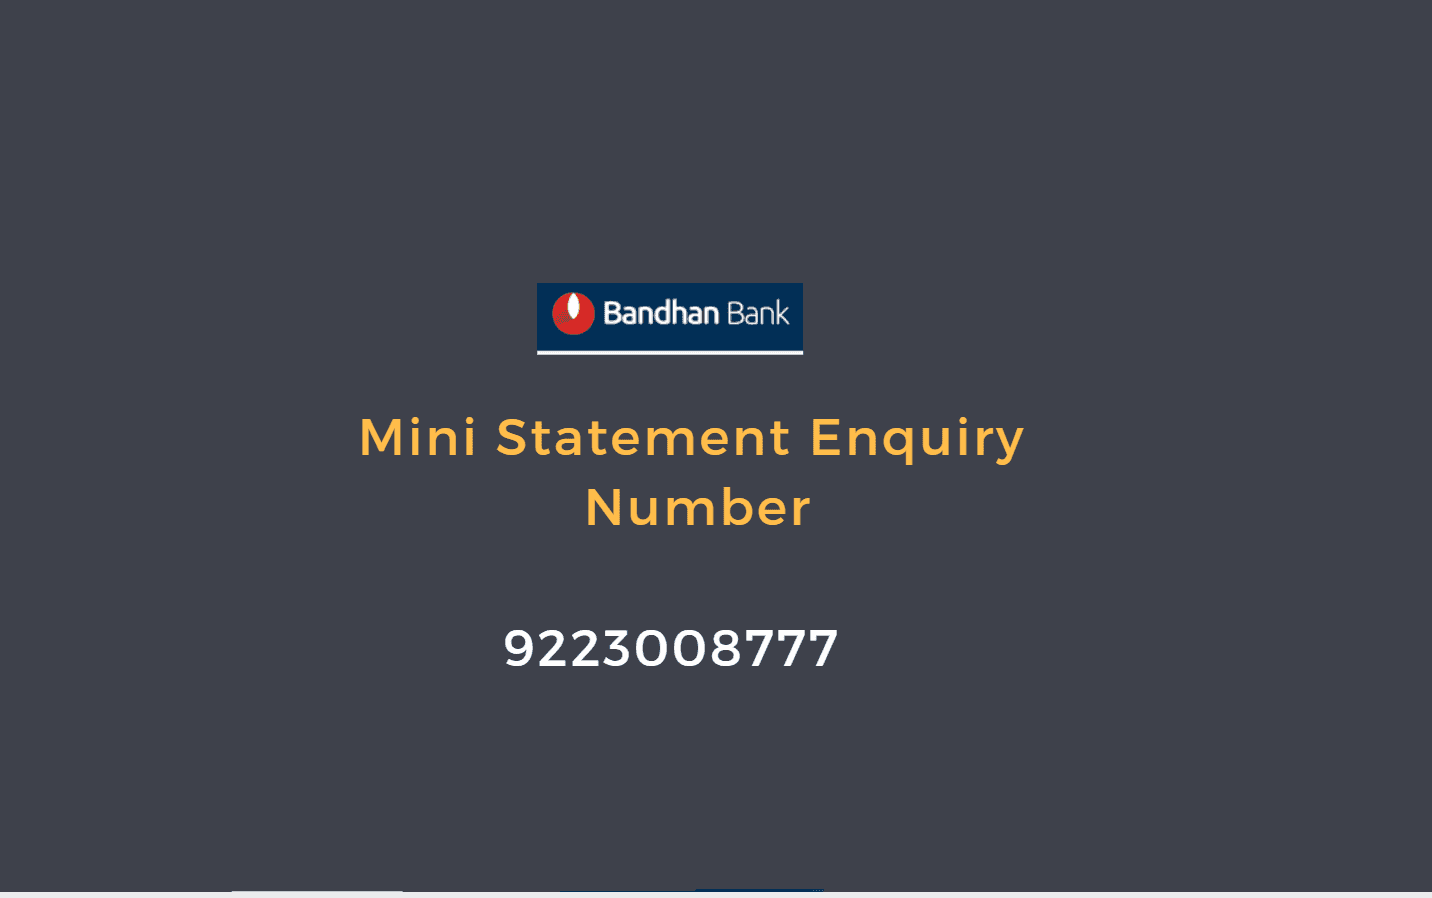 bandhan bank mini statement number